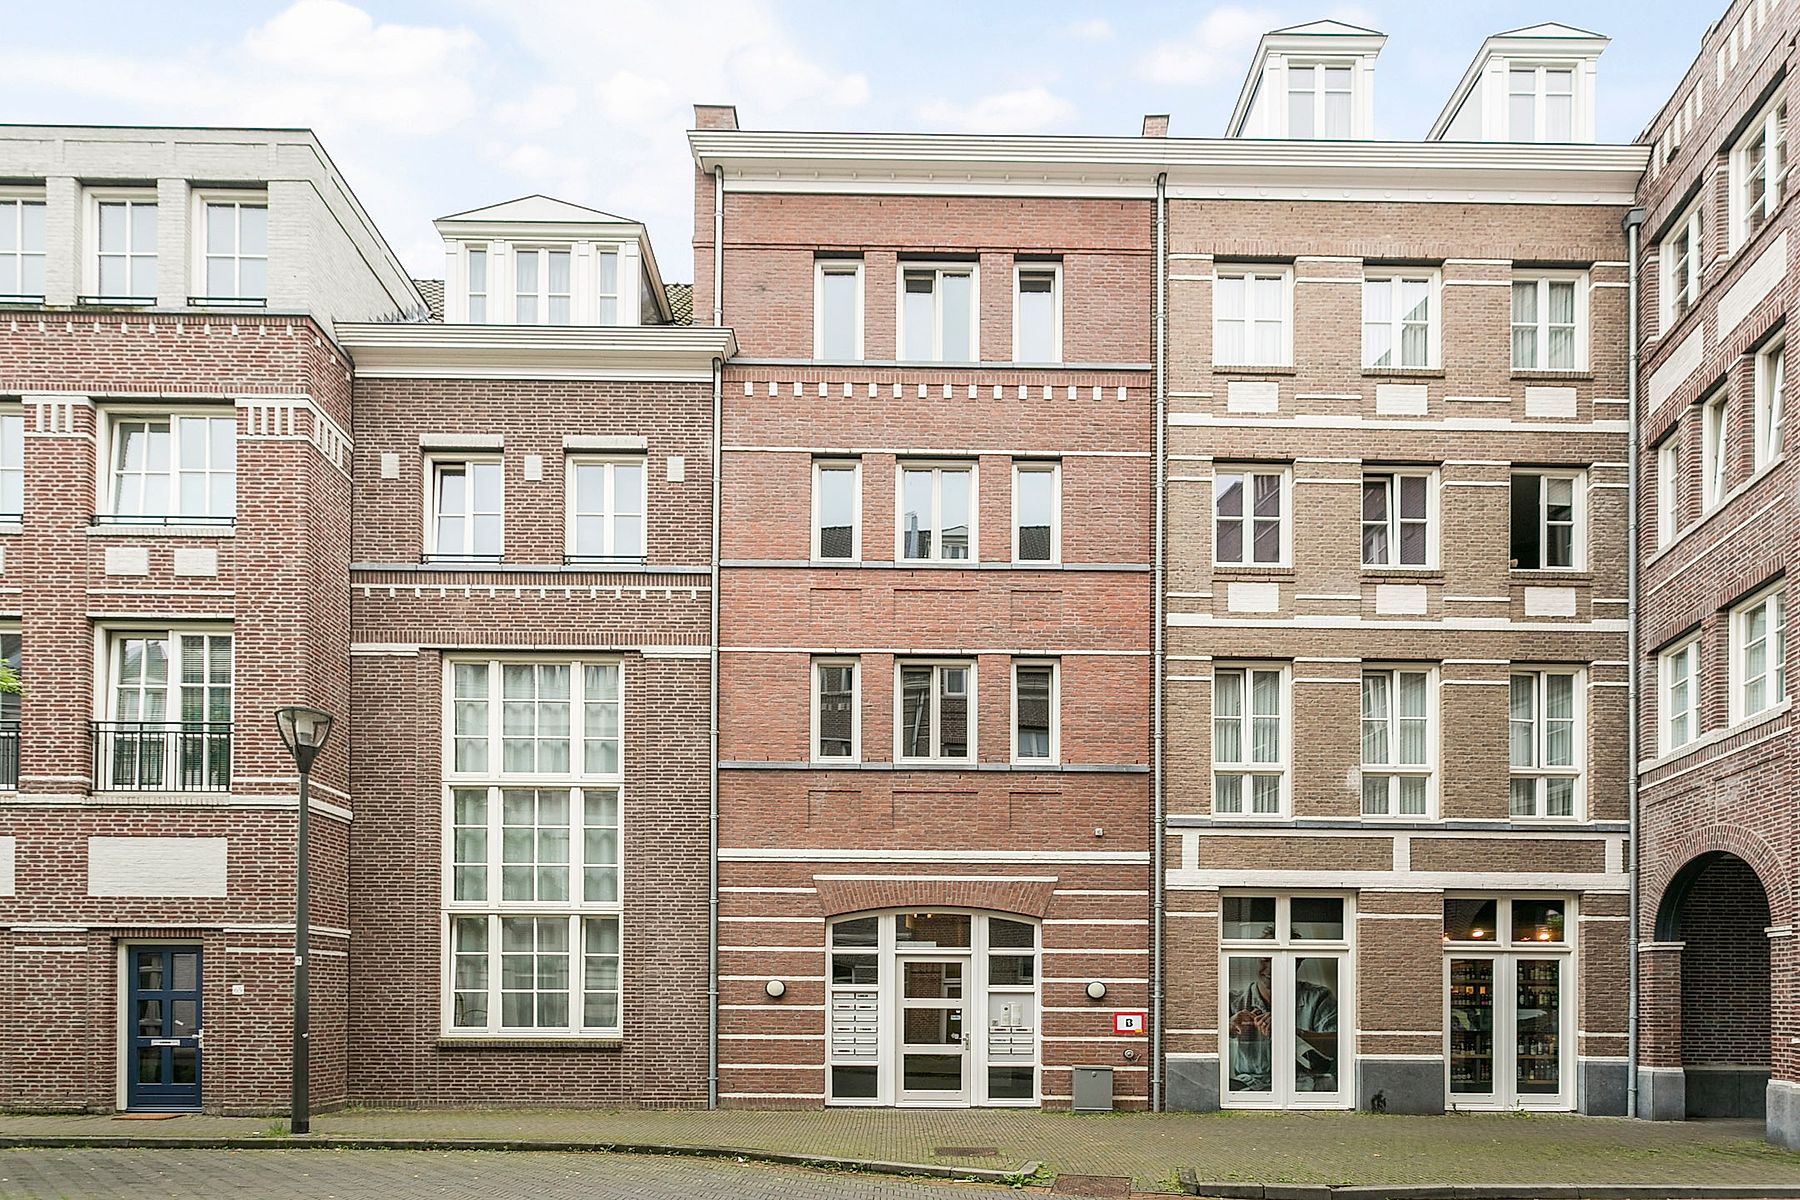 Bekijk foto 1/16 van apartment in Helmond